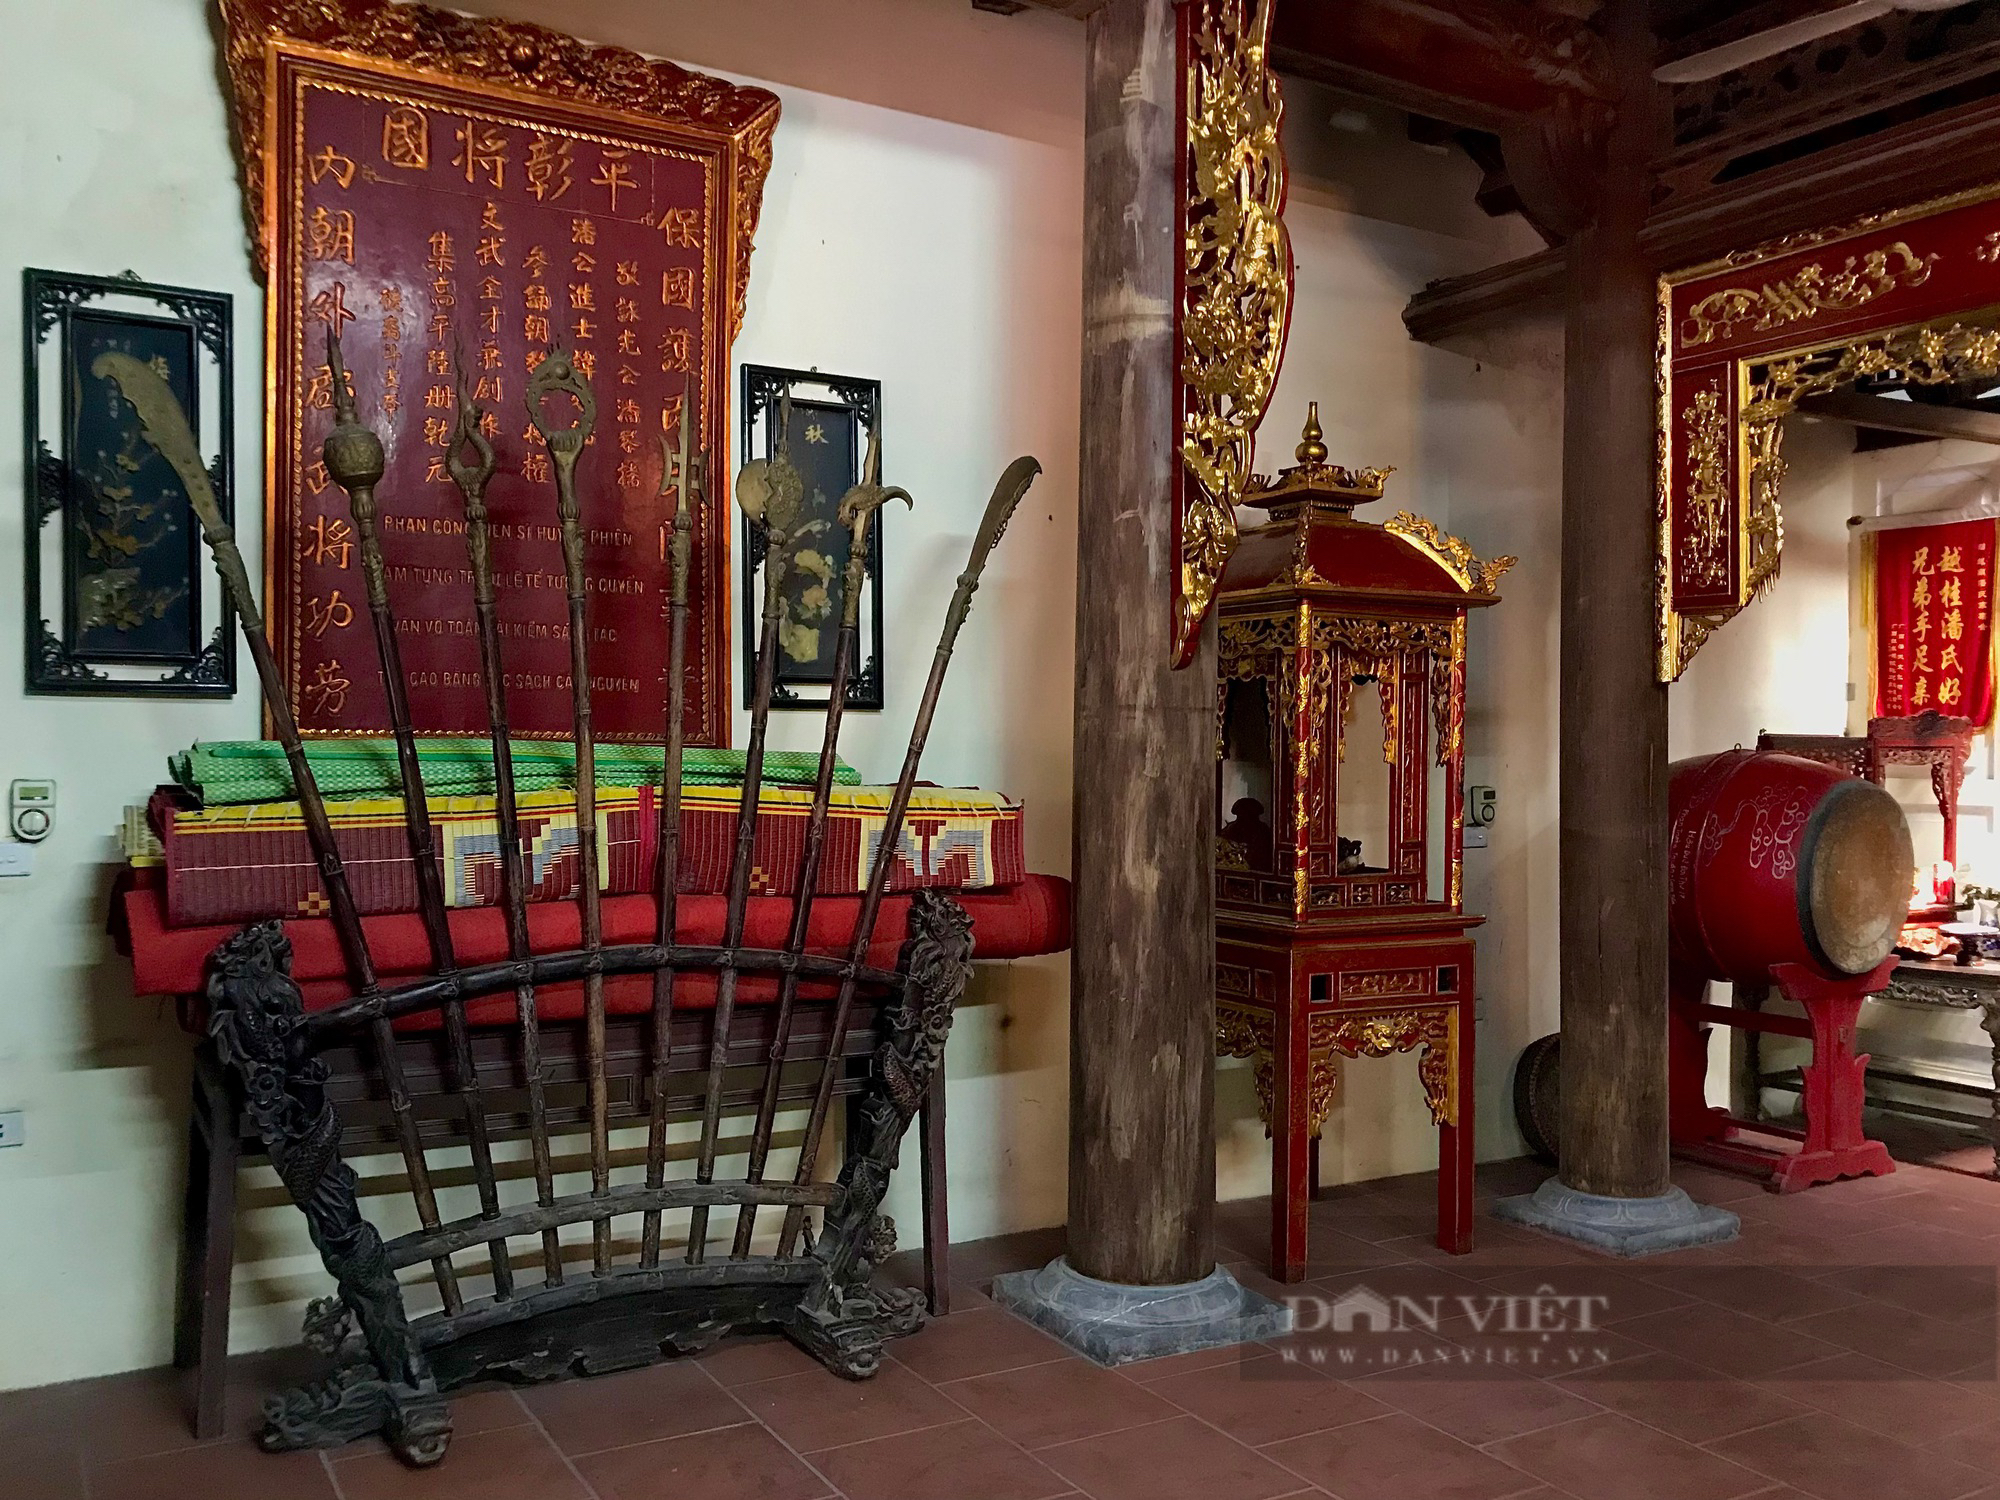 Chiêm ngưỡng nhà thờ cổ 400 tuổi của dòng họ Phan ở Hà Nội - Ảnh 5.